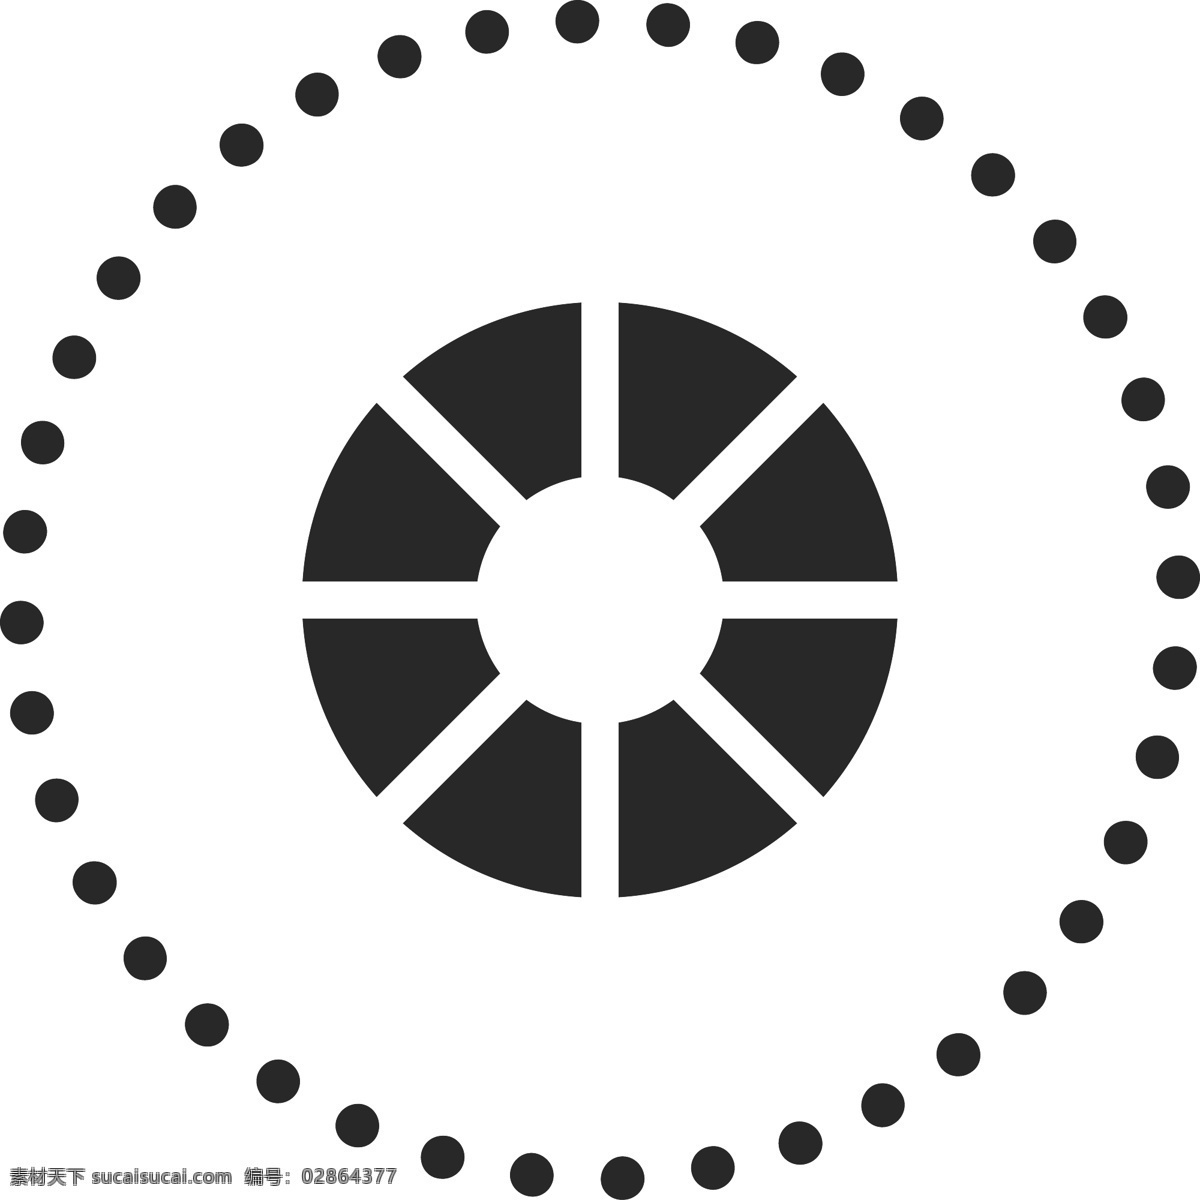 黑色 圆圈 图标 免 抠 图 黑色圆圈 圆圈图标 虚线圈 ui应用图标 网页图标 电脑图标 卡通图案 卡通插画